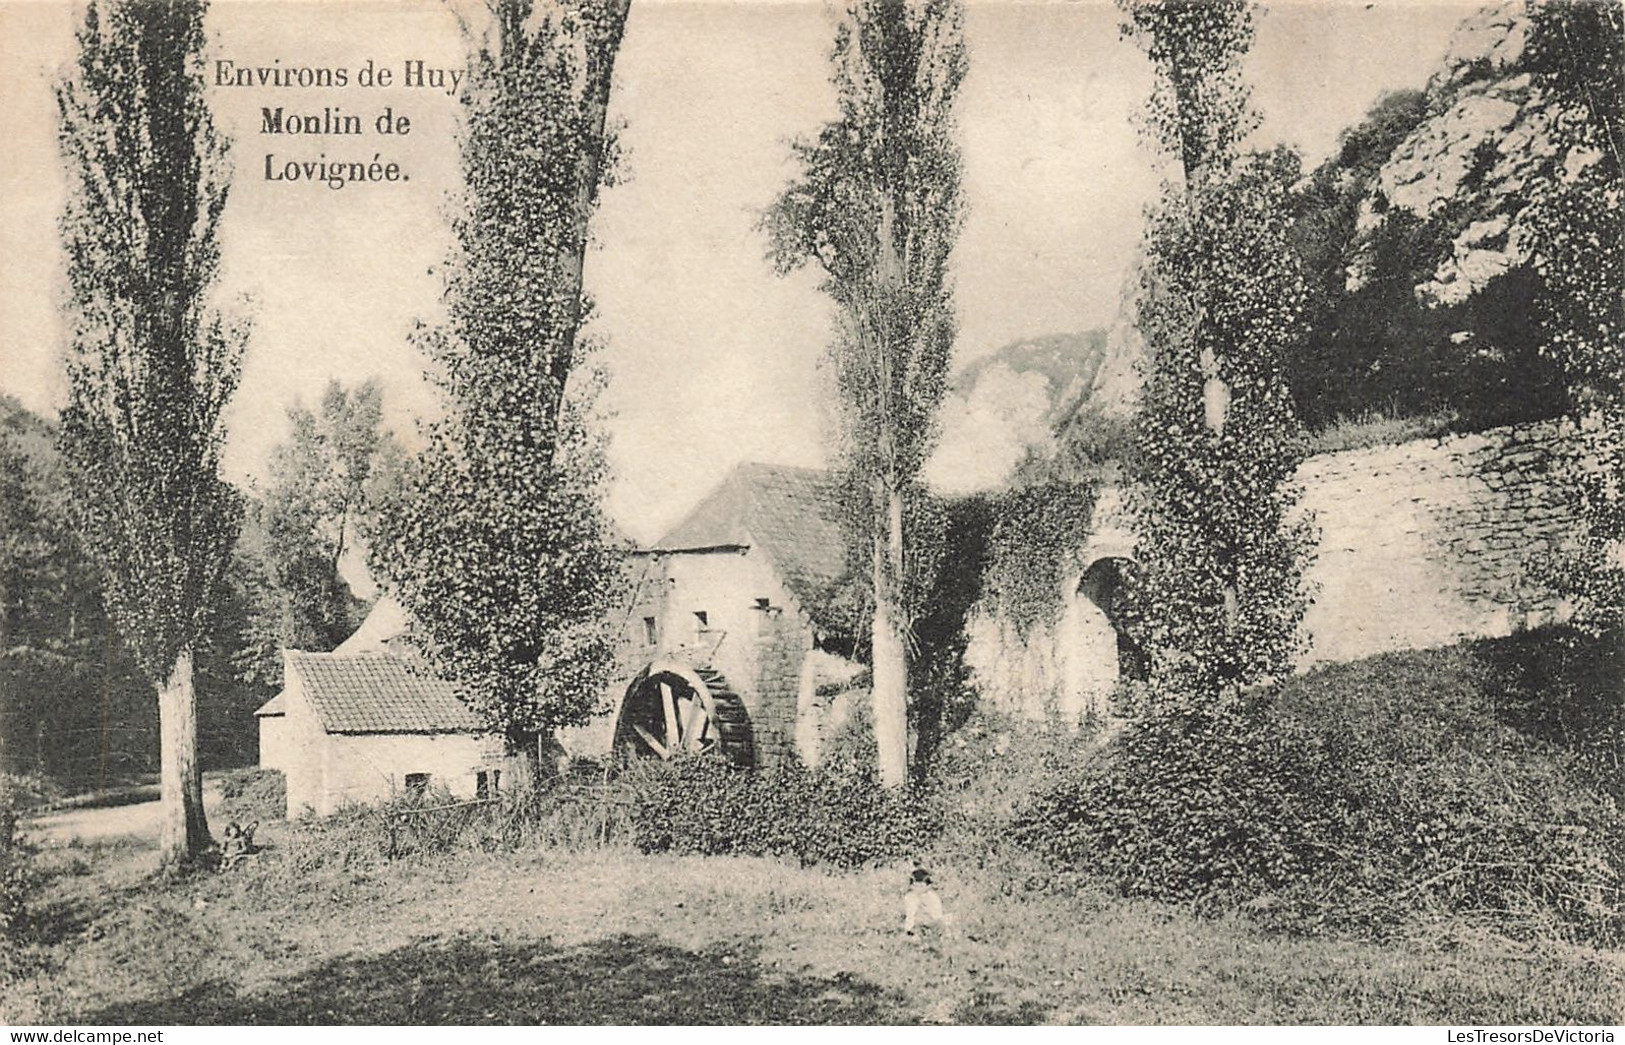 Belgique - Environs De Hy - Moulin De Lovignée - Erreur Dans L'impression (Monlin) - Carte Postale Ancienne - Huy